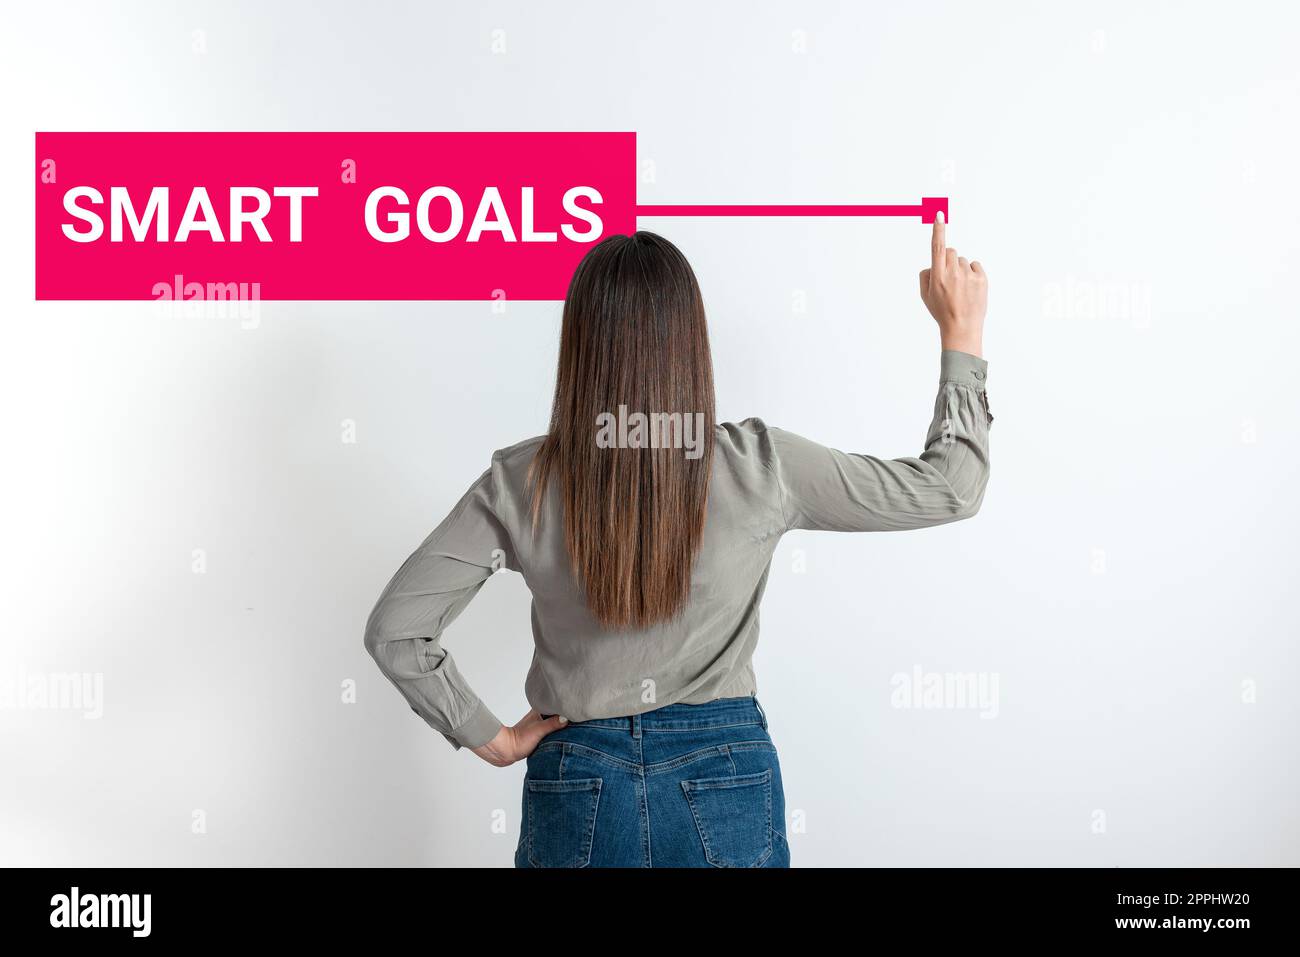 Konzeptionelle Anzeige von Smart-Zielen. Mnemonik für Geschäftsbeispiele als Grundlage für die Festlegung von Zielen und Richtungsvorgaben Stockfoto